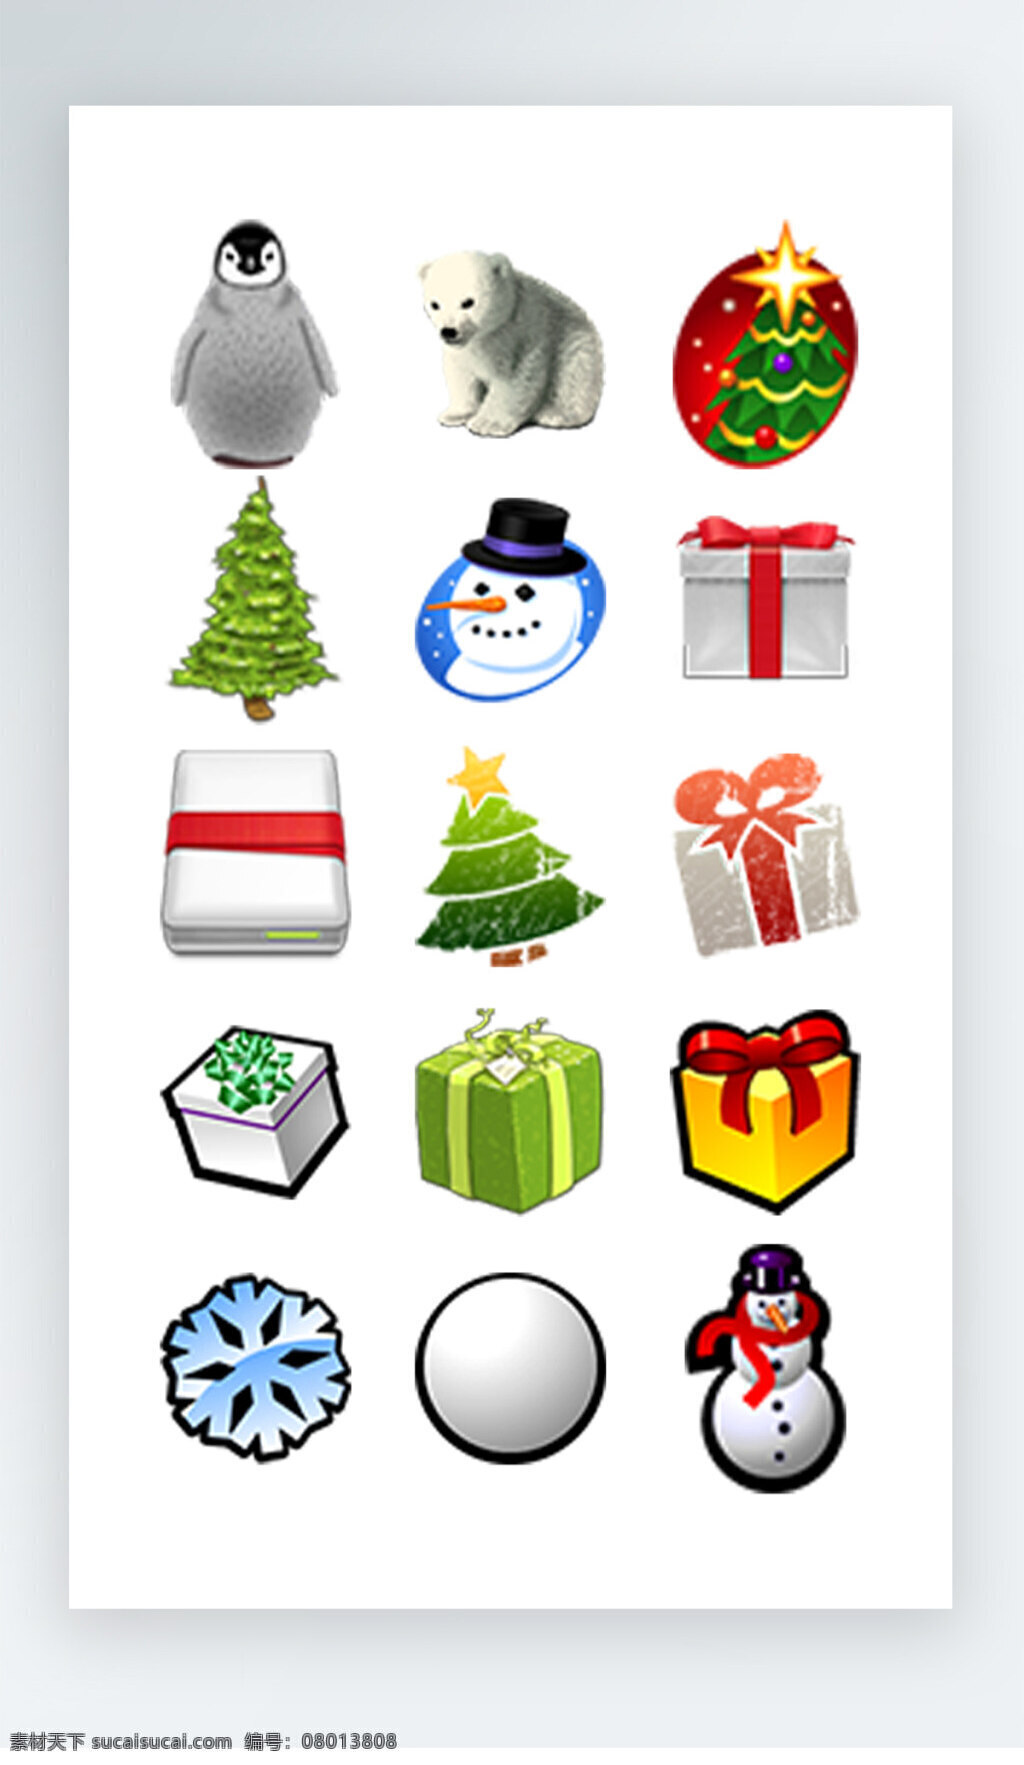 圣诞节 图标 彩色 写实 图标素材 圣诞节图标 雪人 松树 礼物 雪花 雪球图标